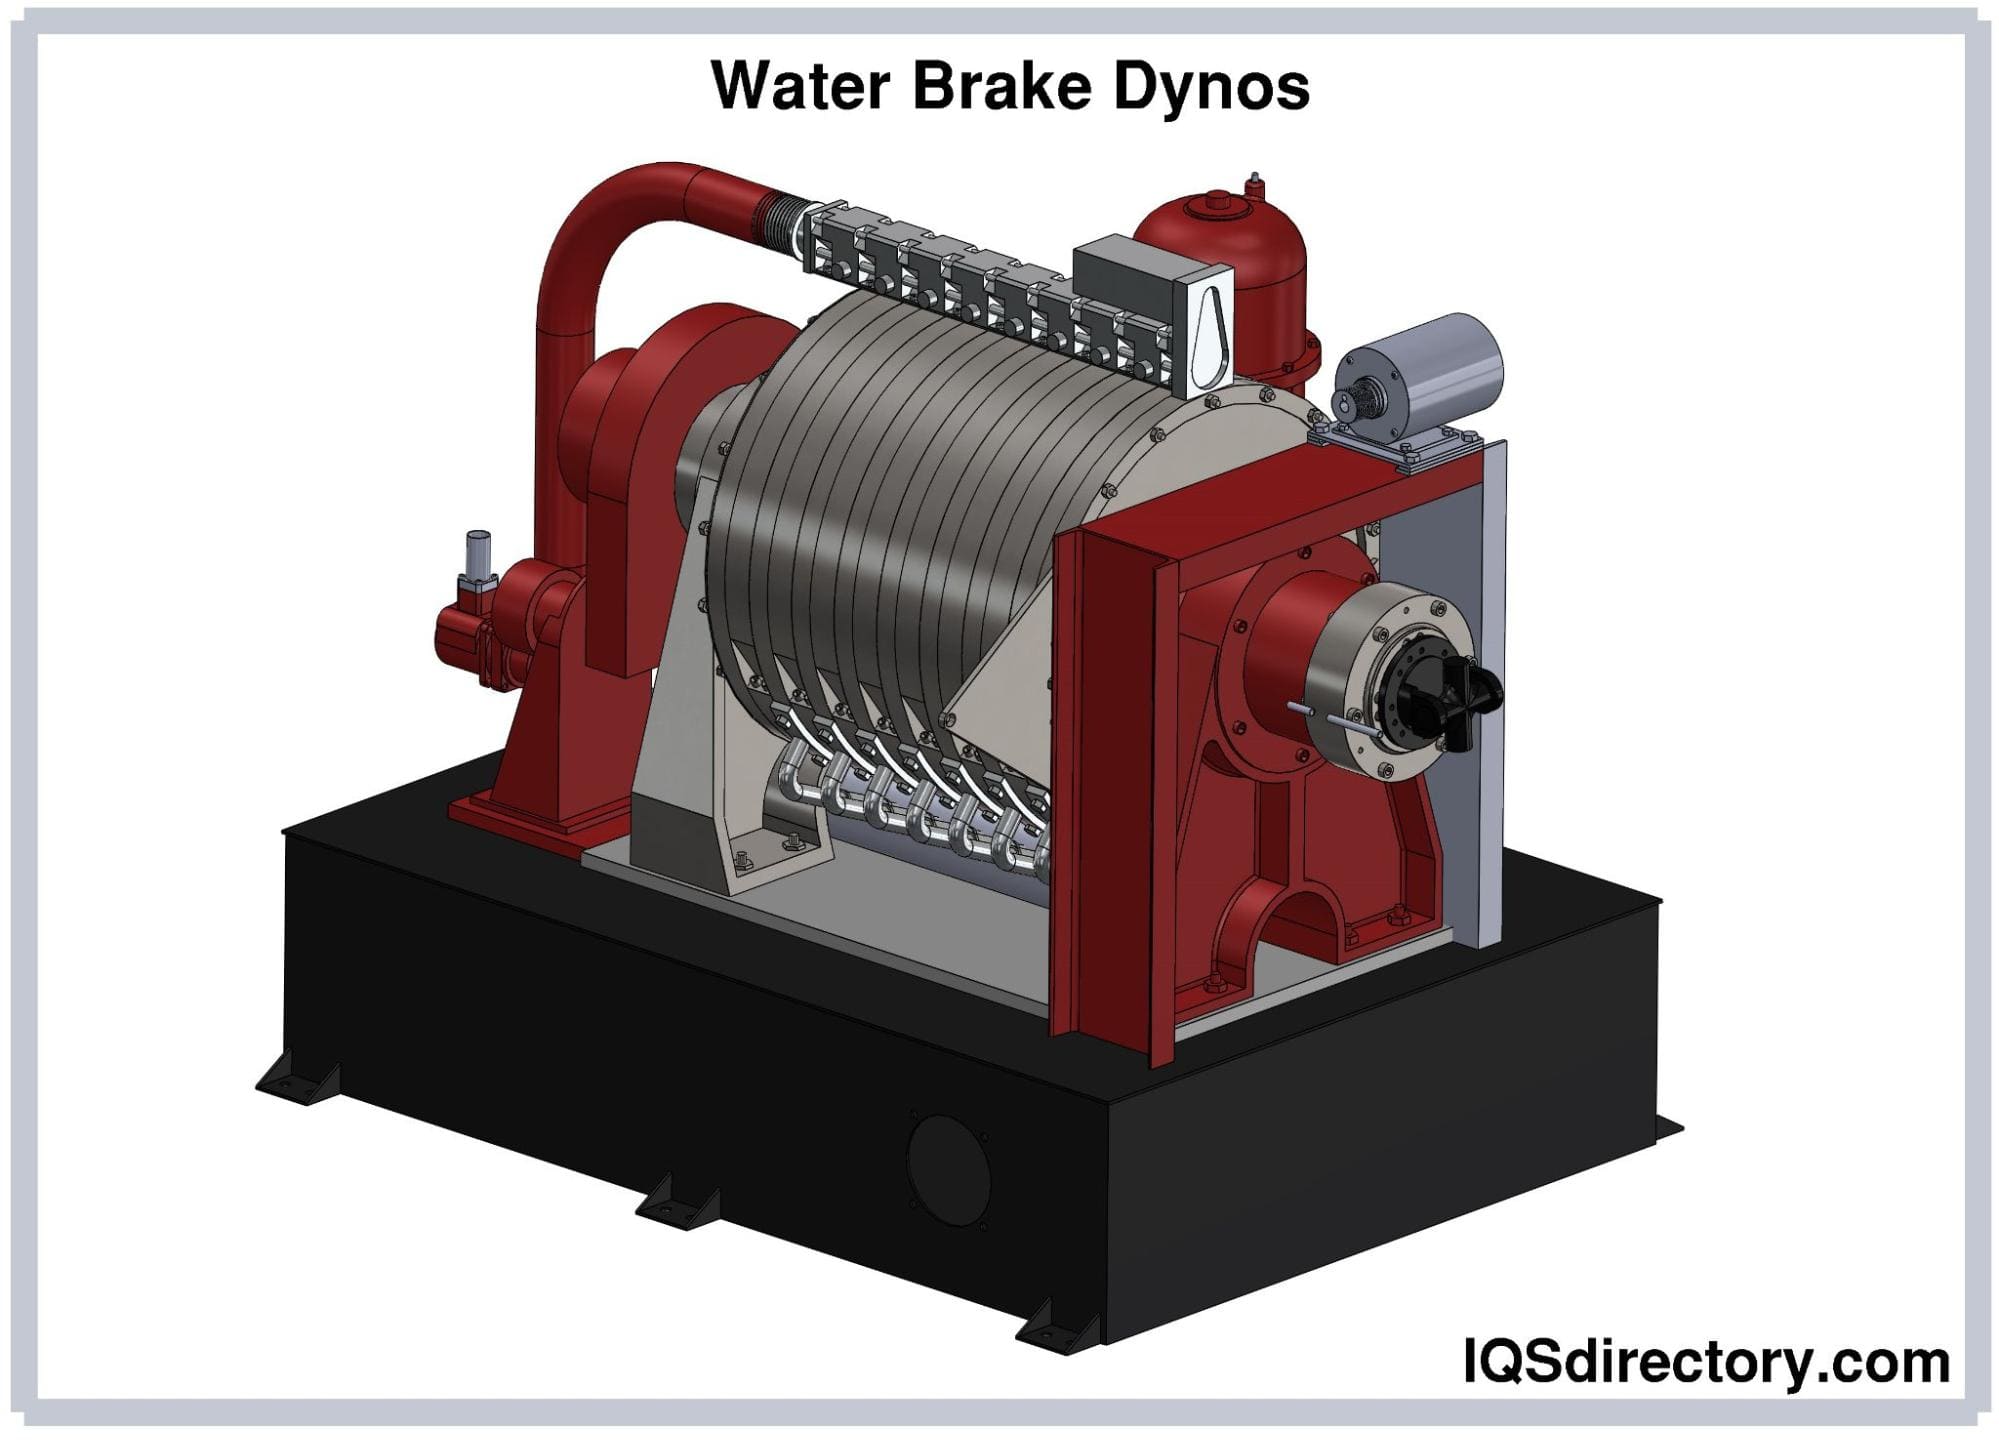 Water Brake Dynos